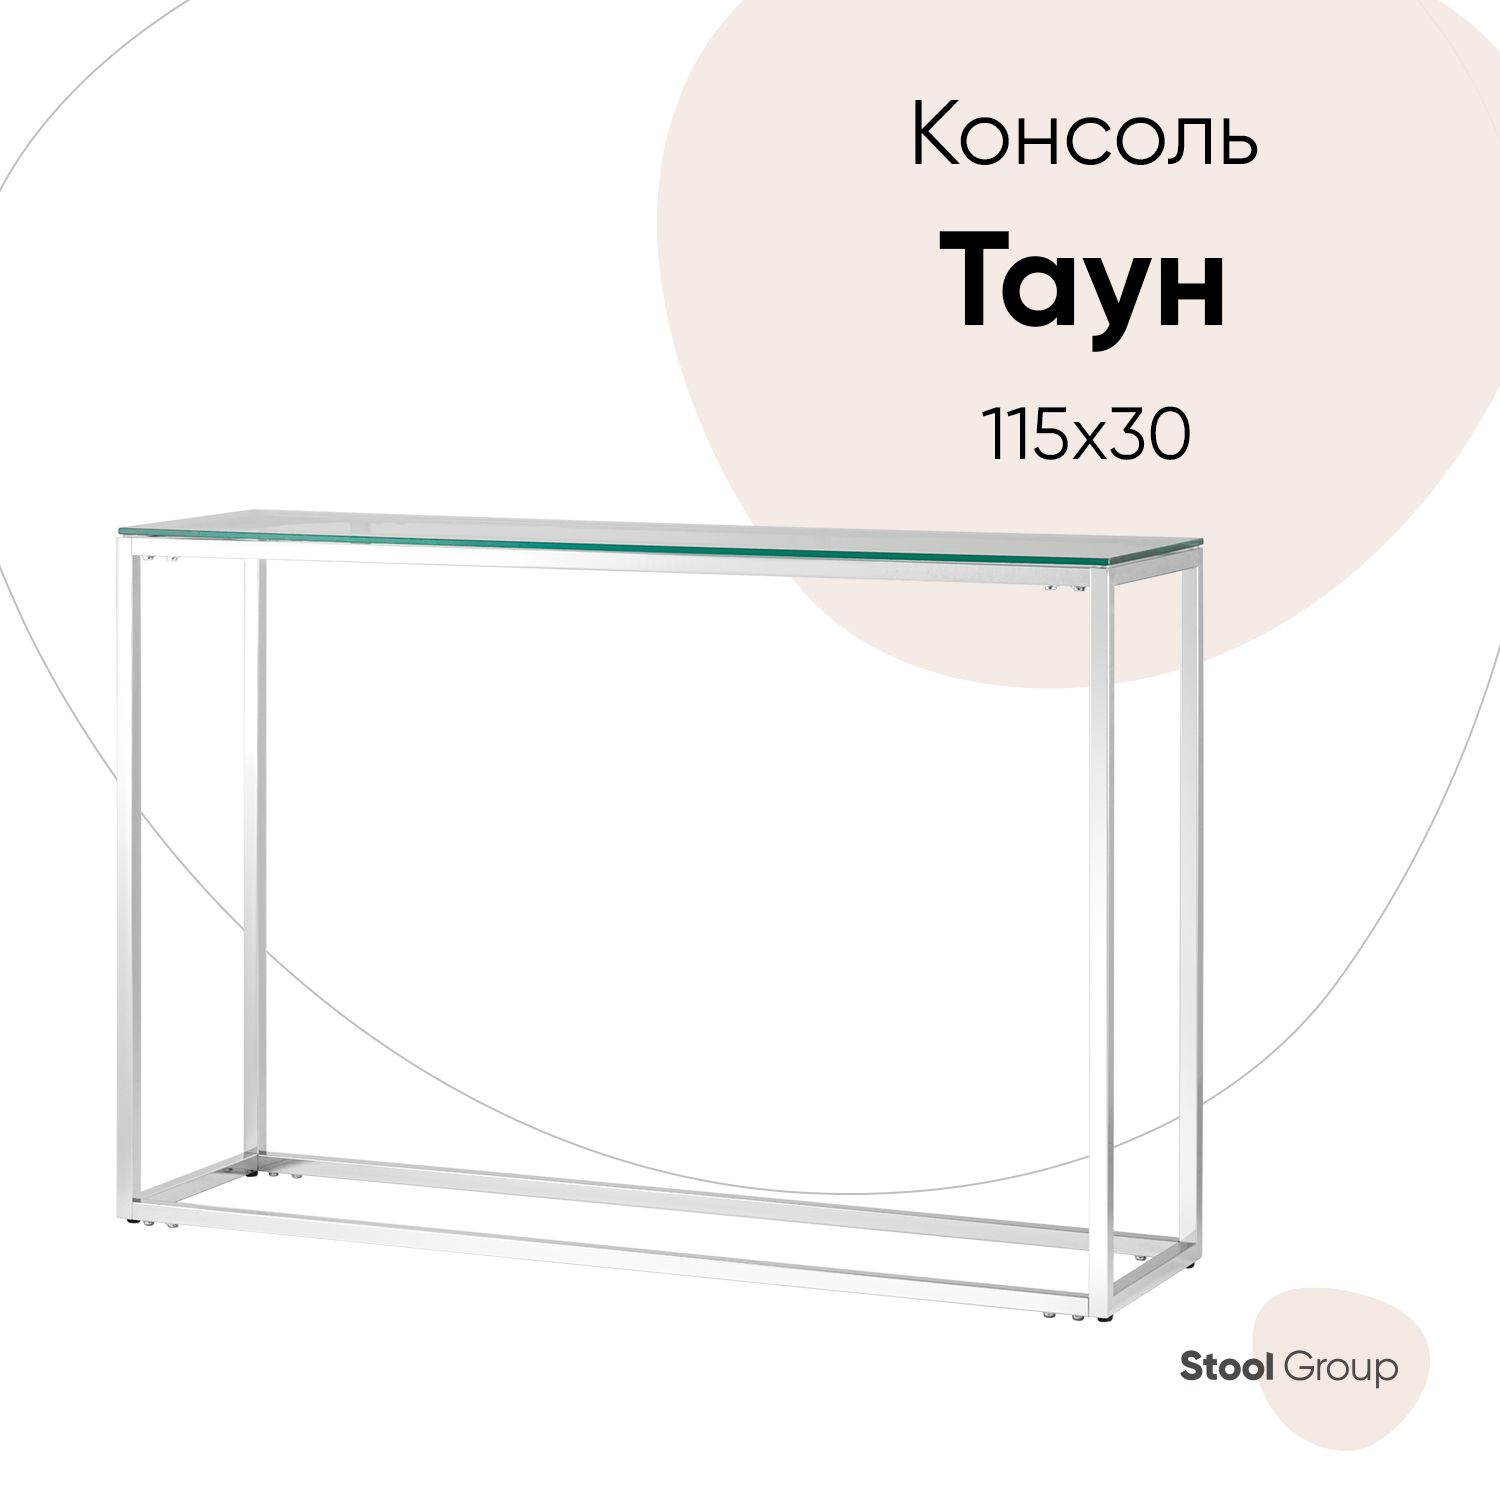 Консоль ТАУН 115*30, прозрачное стекло, сталь серебро